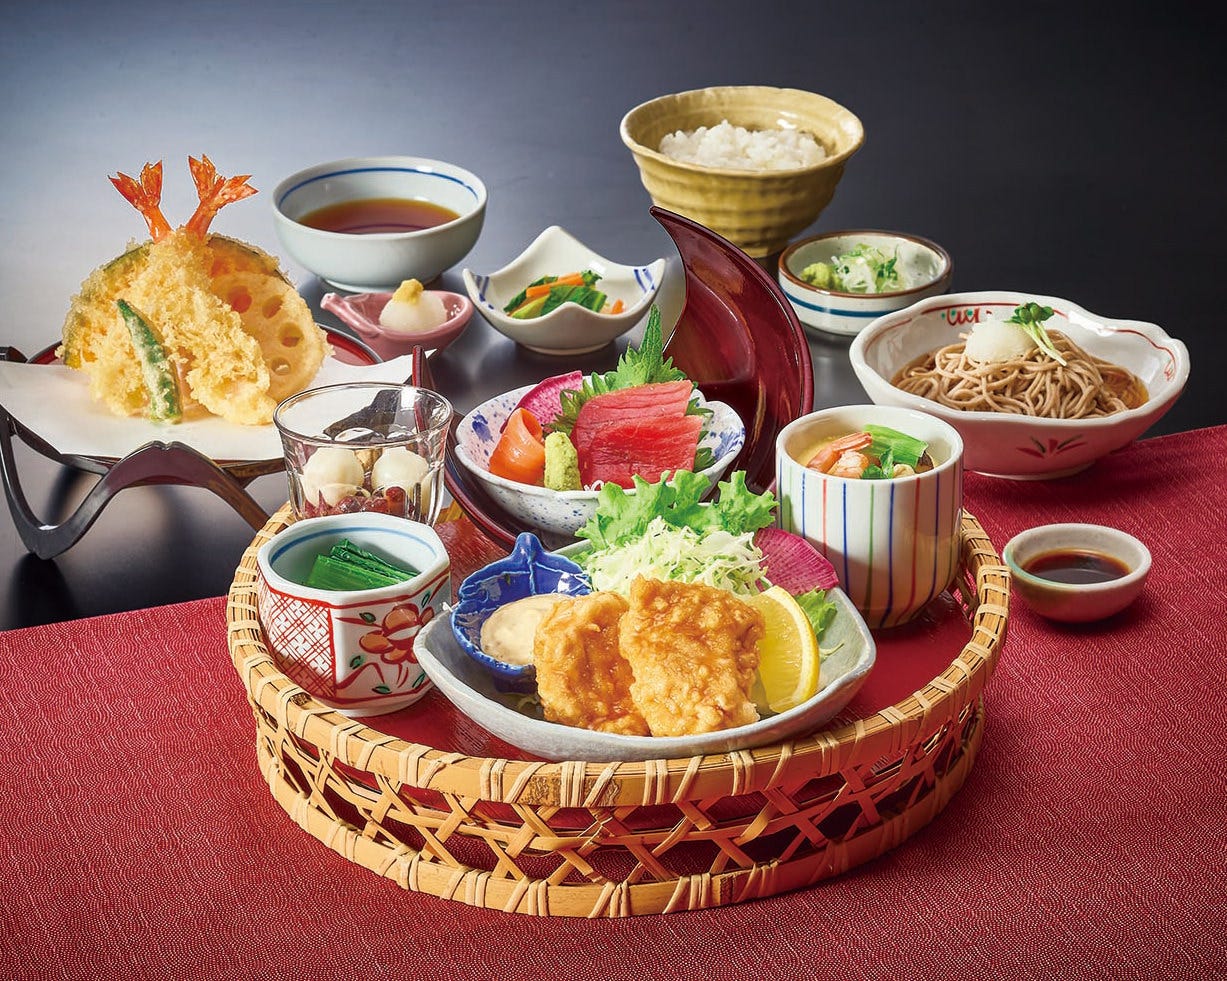 そば・寿司・天ぷらなどの当店自慢の和食を存分に楽しめる定食